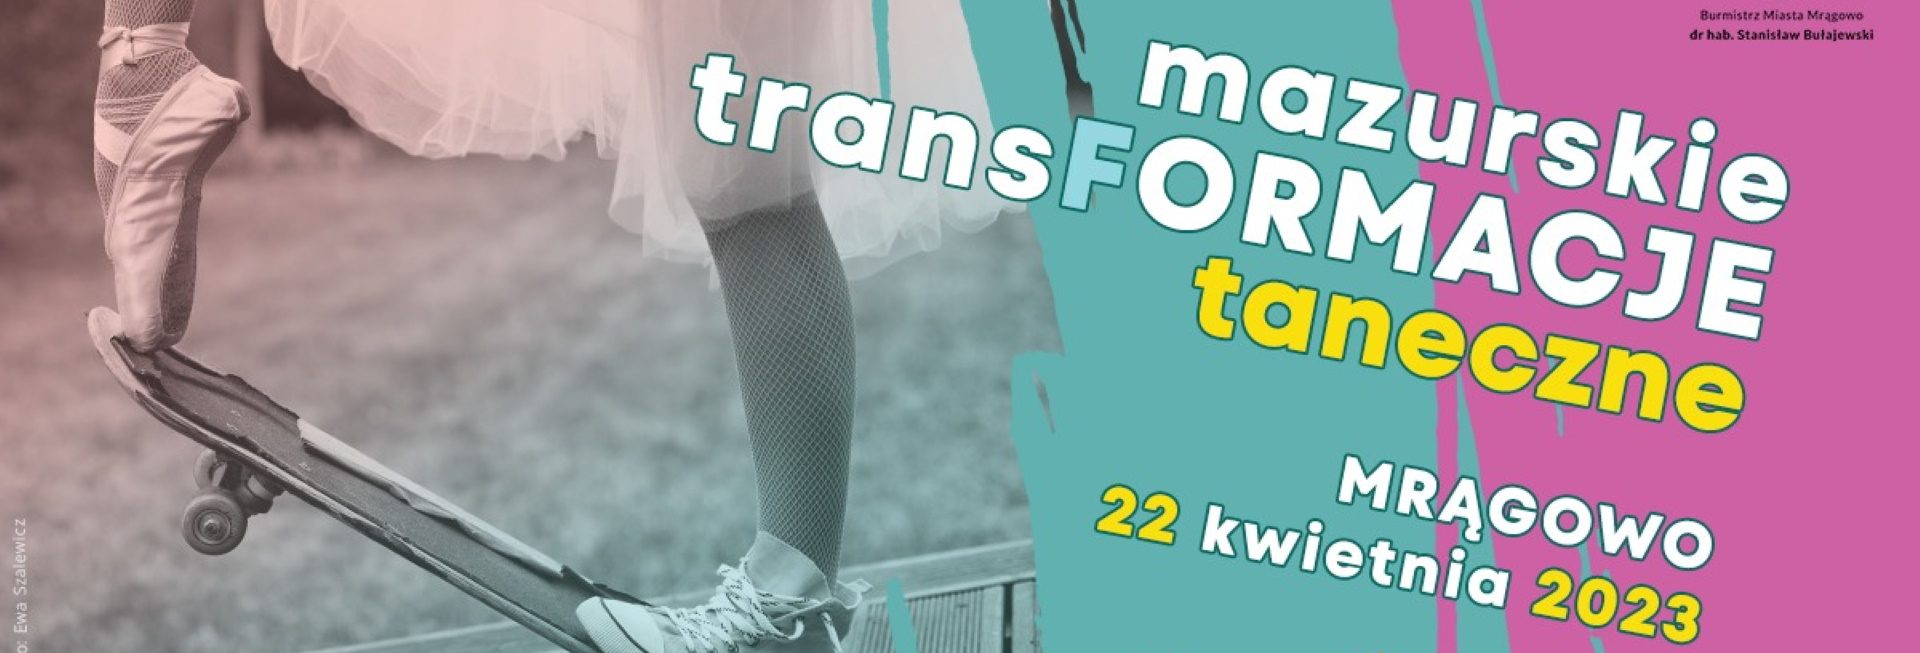 Plakat zapraszający w sobotę 22 kwietnia 2023 r. do Mrągowa na Mazurskie Transformacje Taneczne Mrągowo 2023.